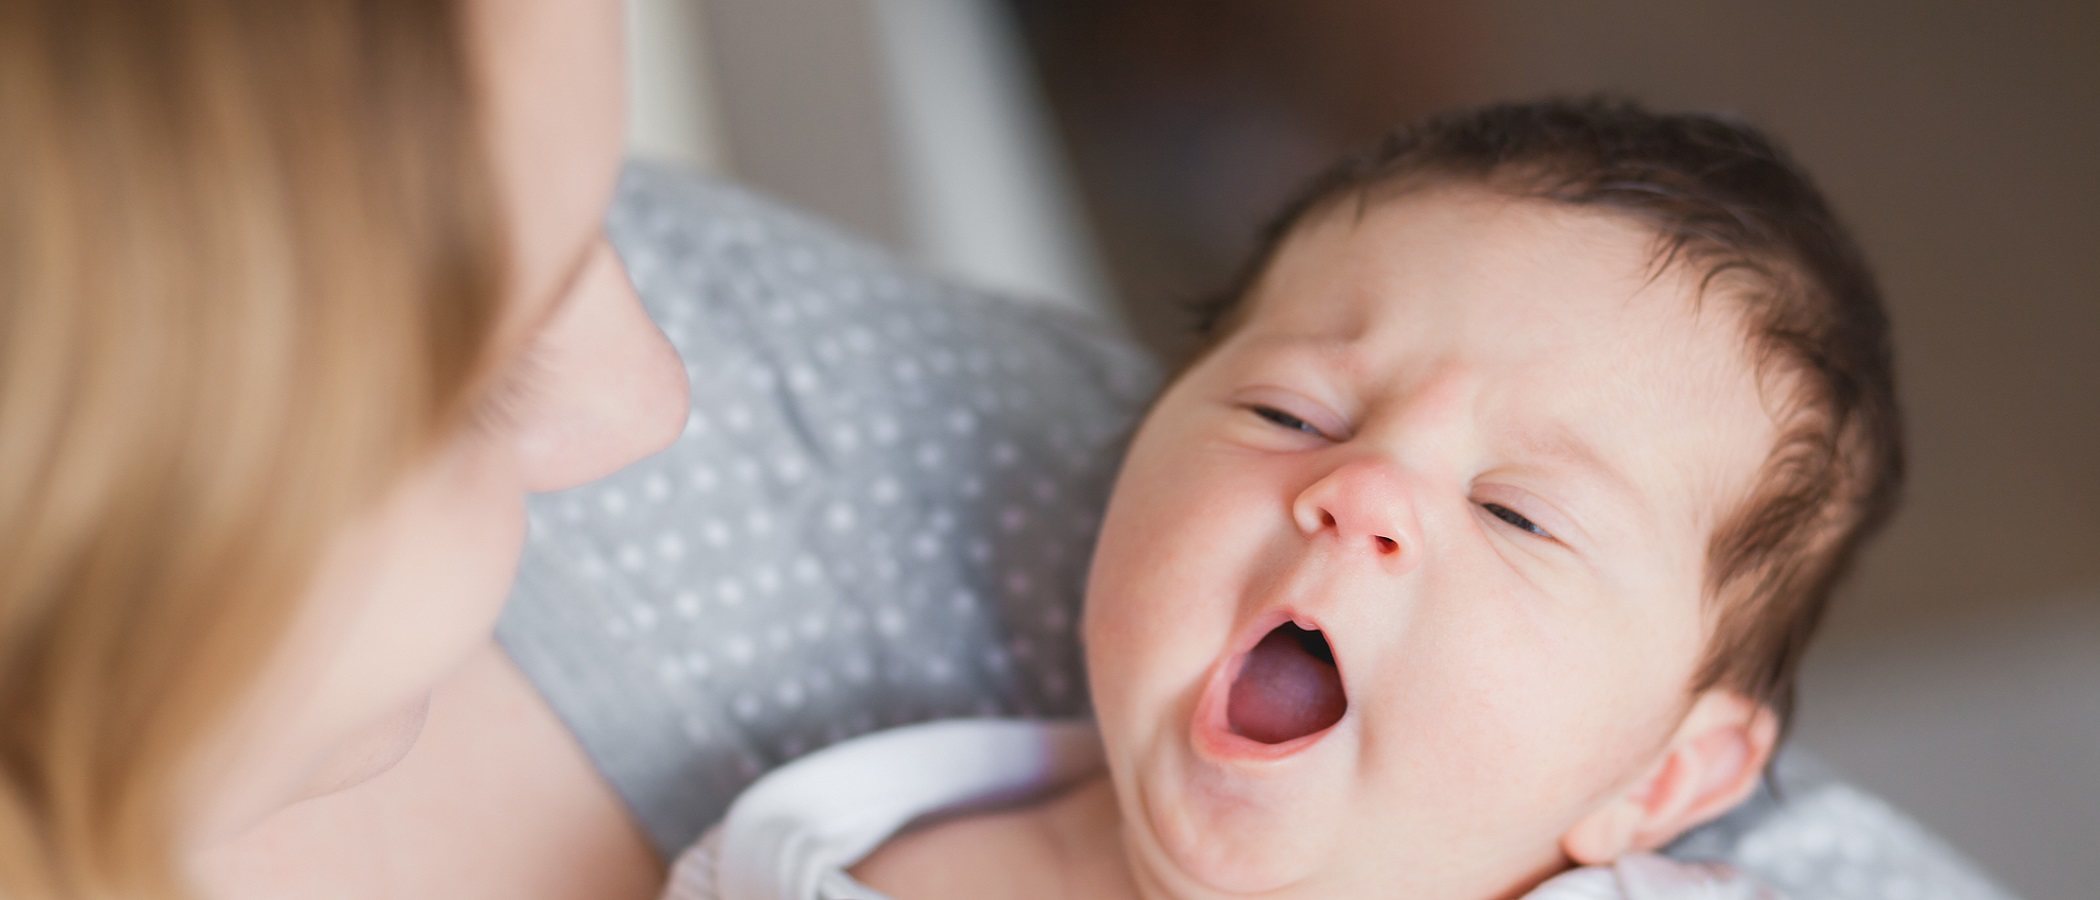 Cómo evitar que un bebé recién nacido se duerma siempre en brazos